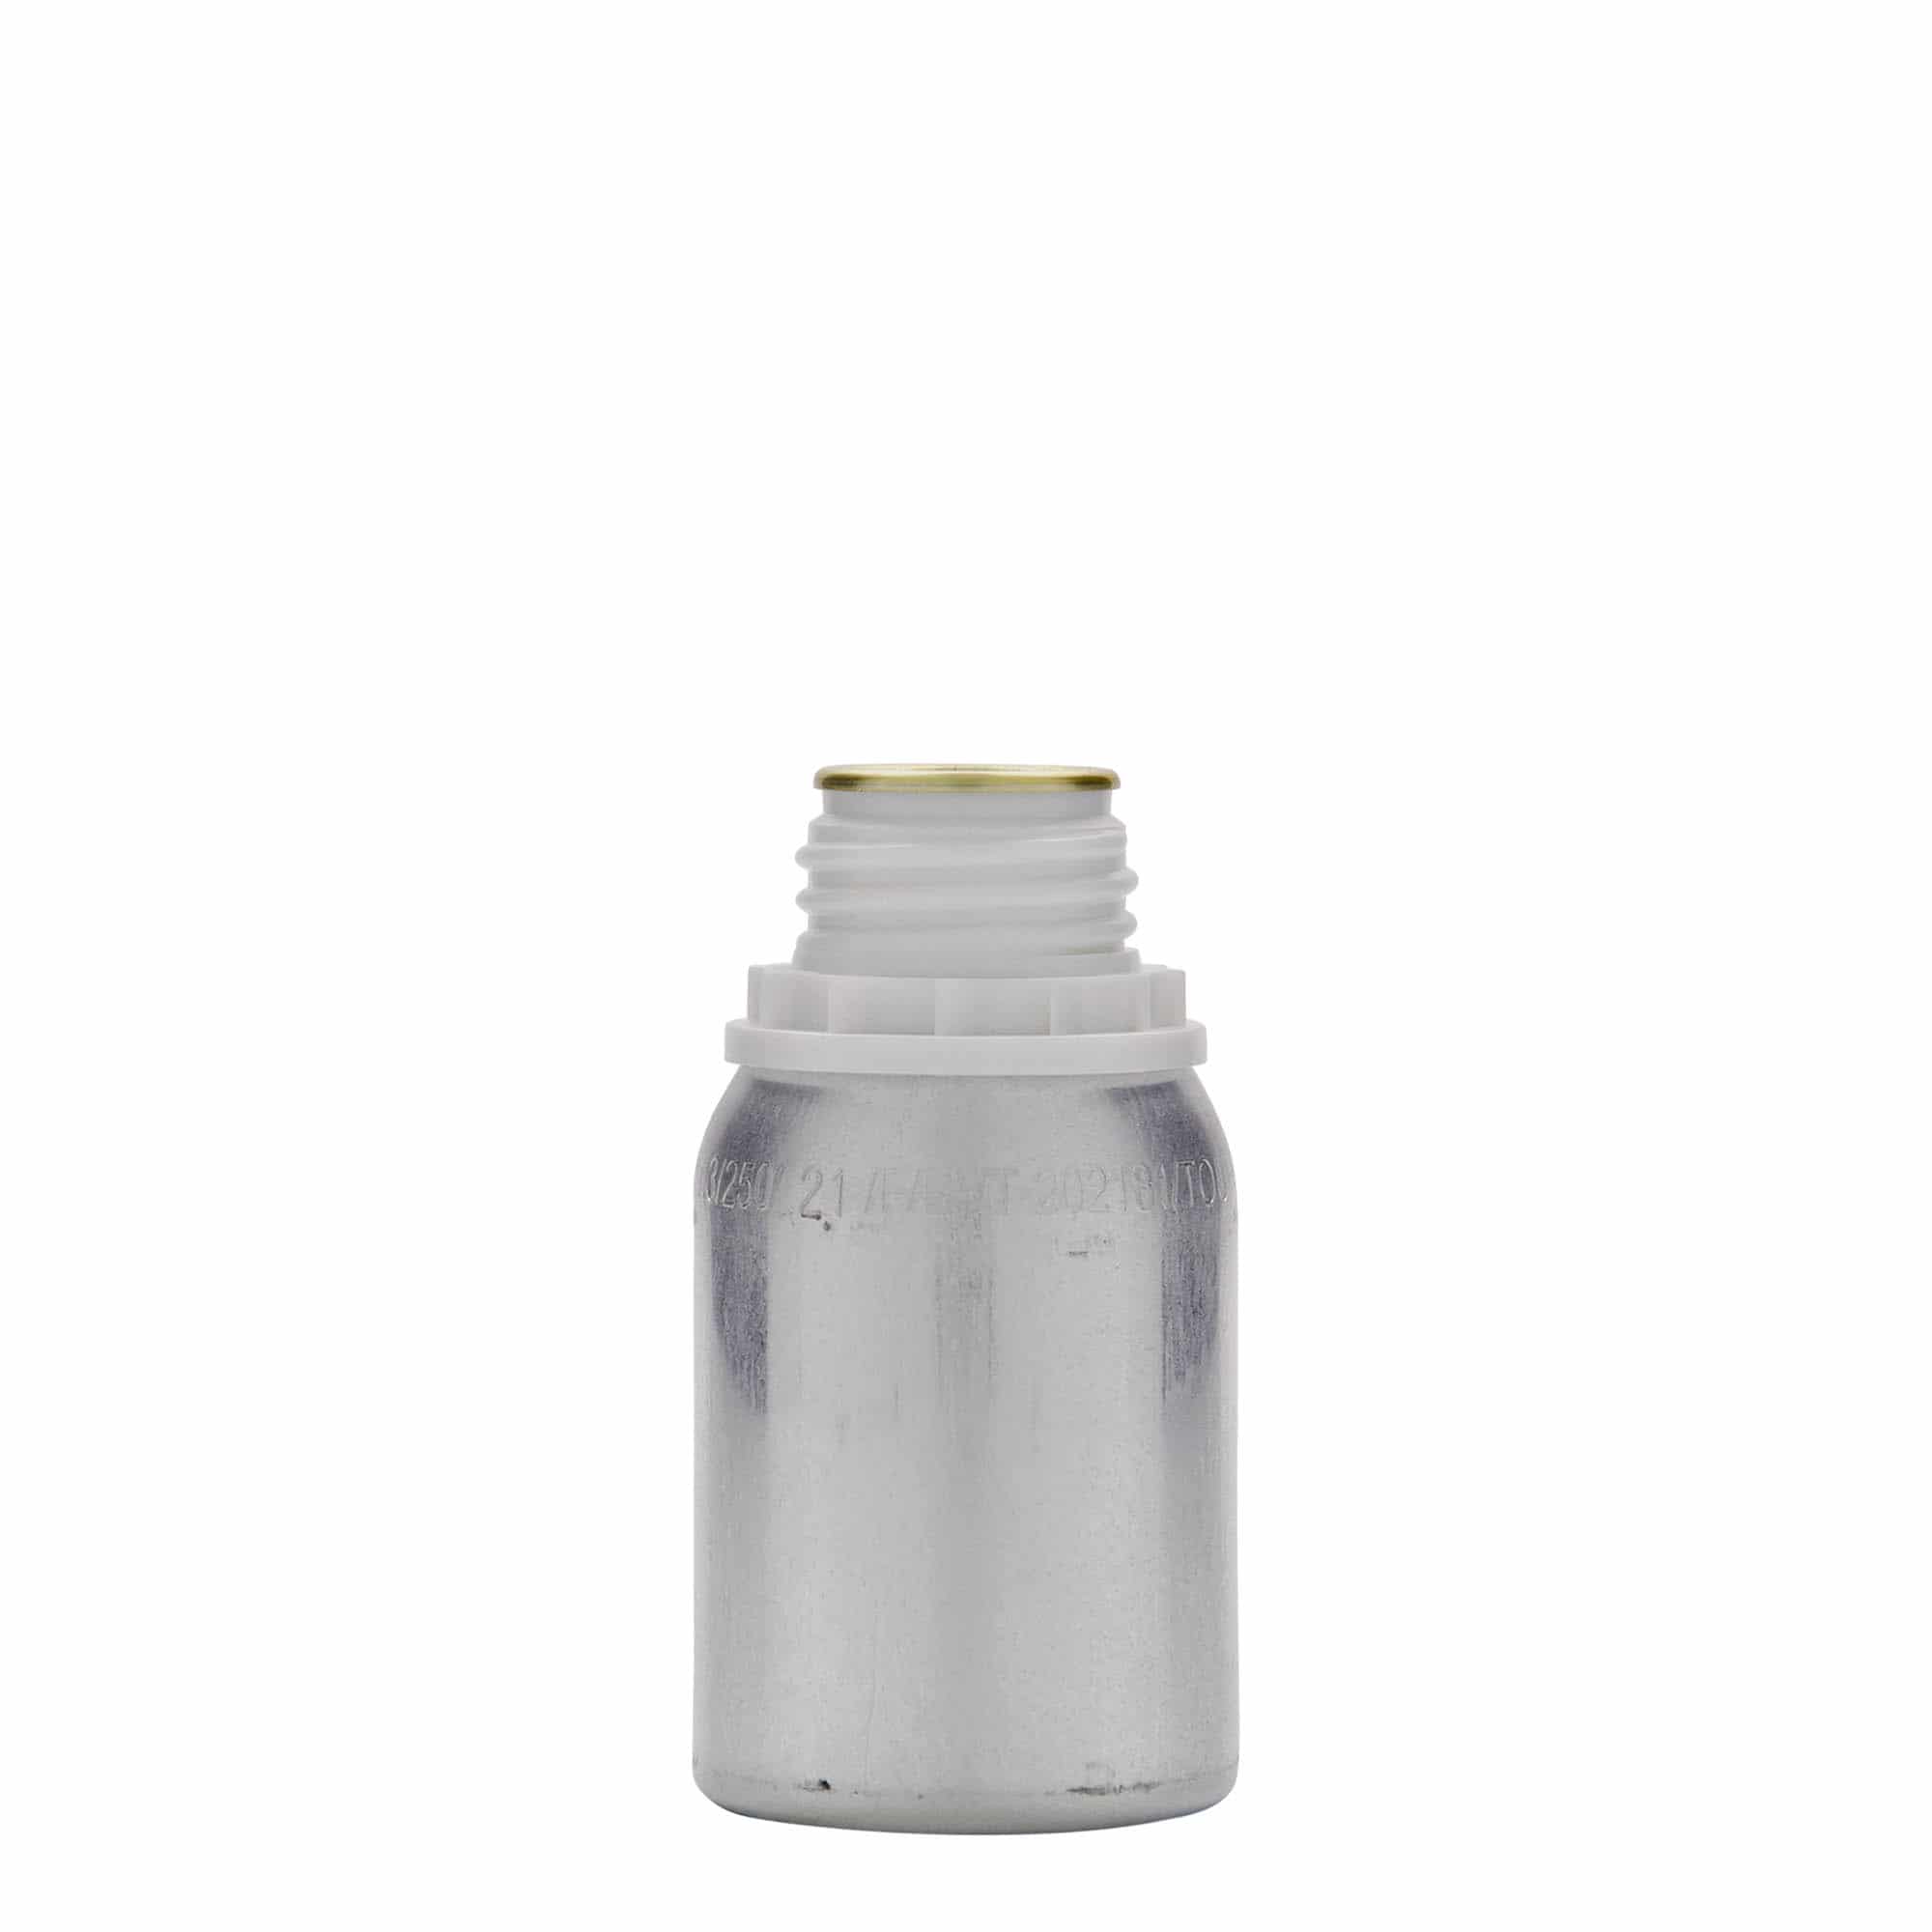 Hliníková lahev 125 ml, kov, stříbrná, ústí: DIN 32